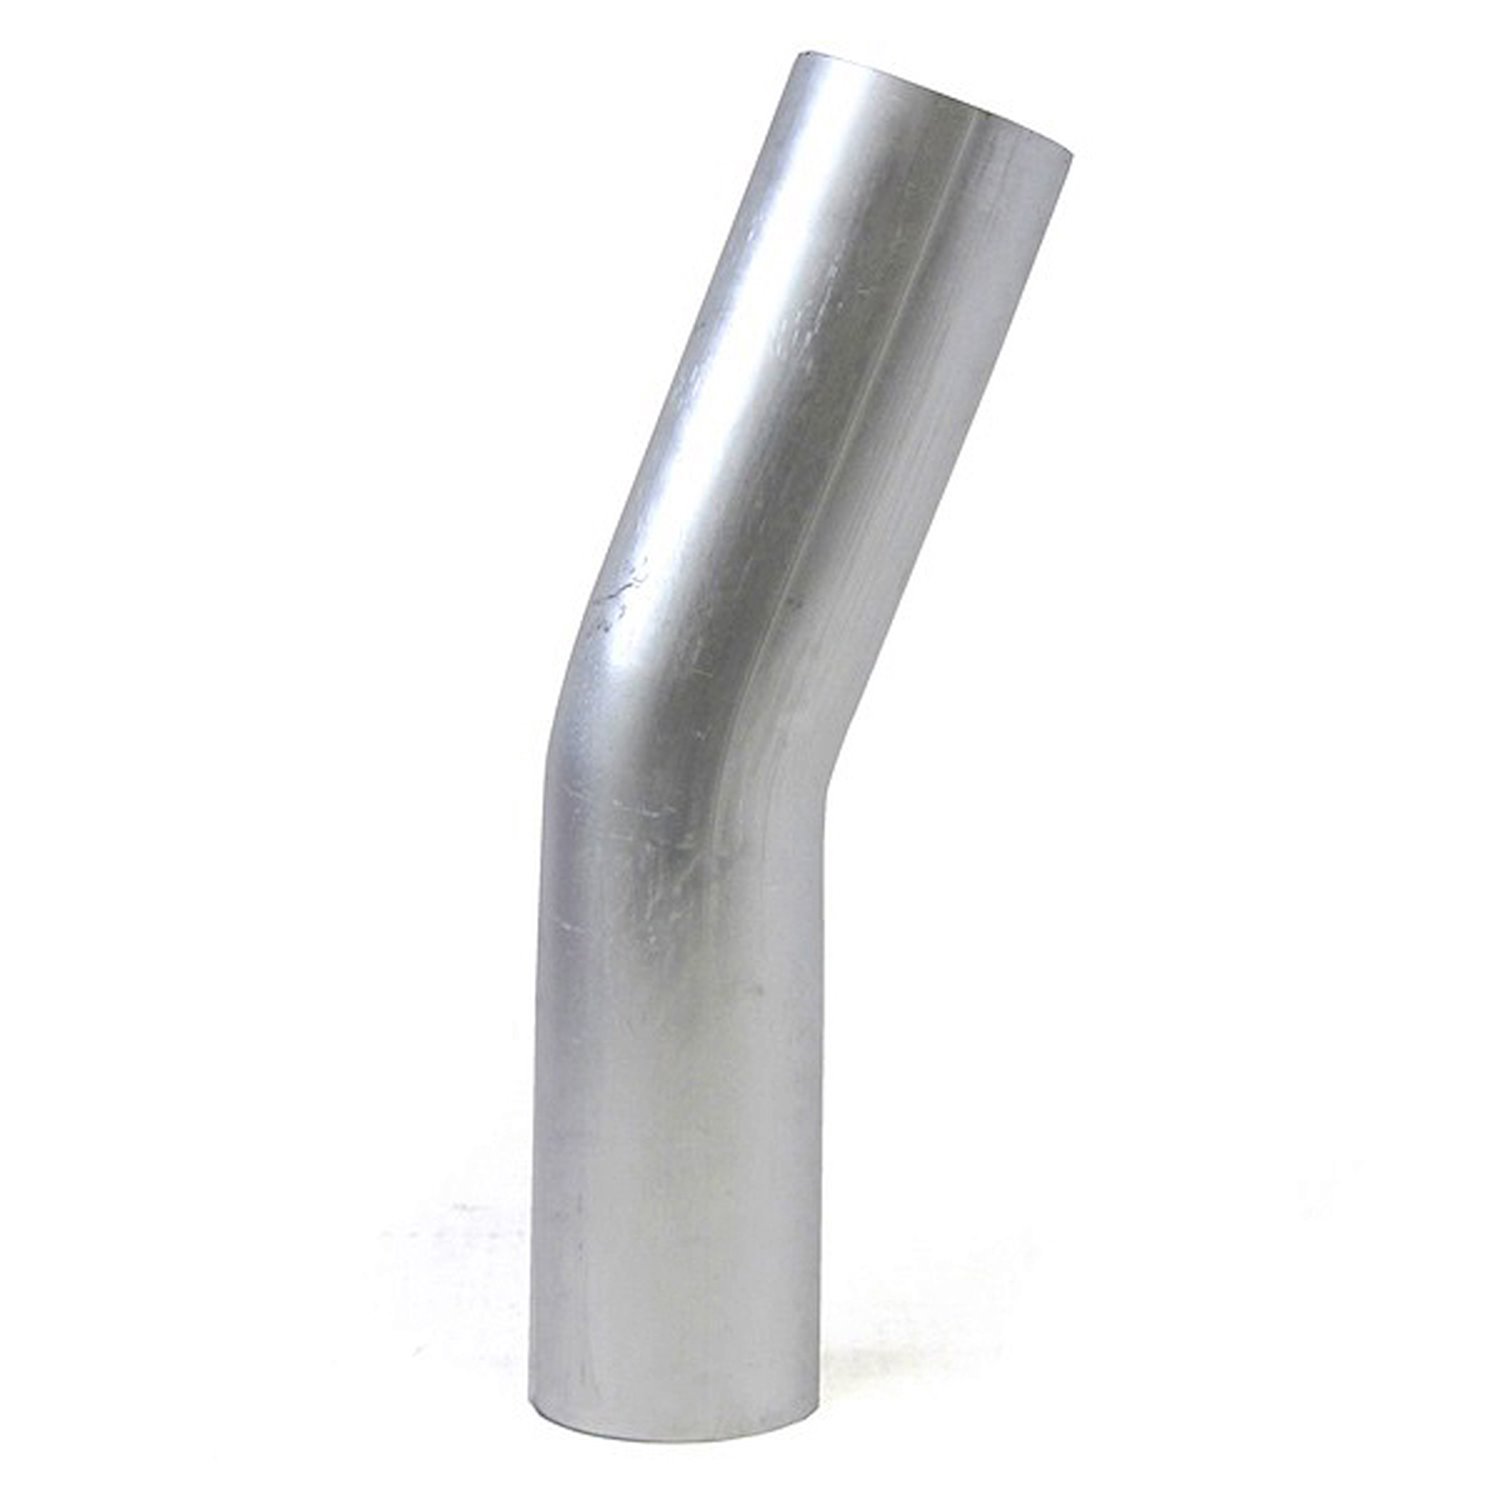 AT20-450-CLR-6 Aluminum Elbow Tube, 6061 Aluminum, 20-Degree Bend Elbow Tubing, 4-1/2 in. OD, Large Radius, 6 in. CLR